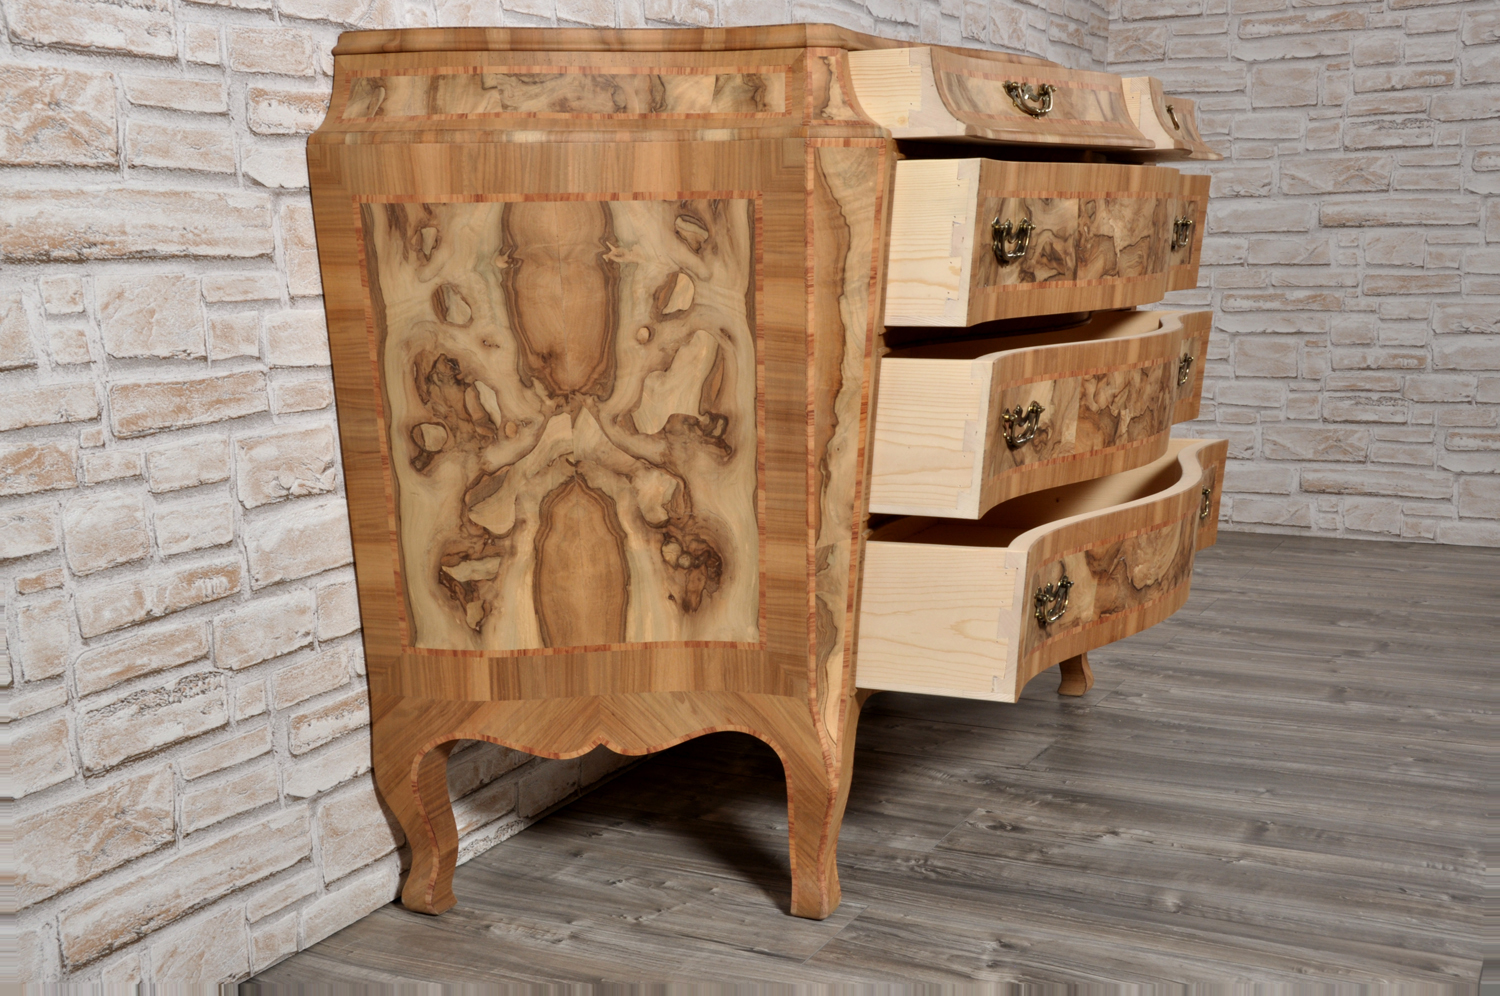 comò sagomato a urna calice in stile veneziano del 1700 con gli interni in legno di abete massello mobile personalizzabile su misura essendo fatto a mano